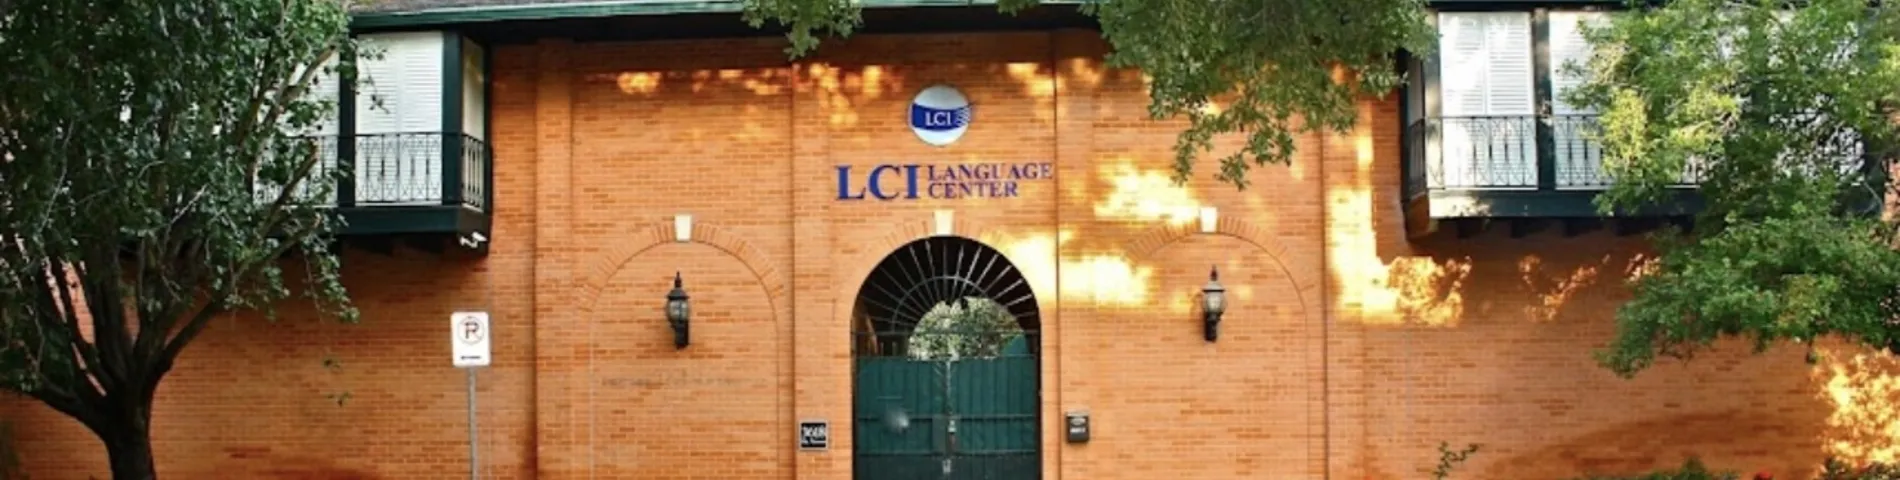 LCI Language Centers kép 1